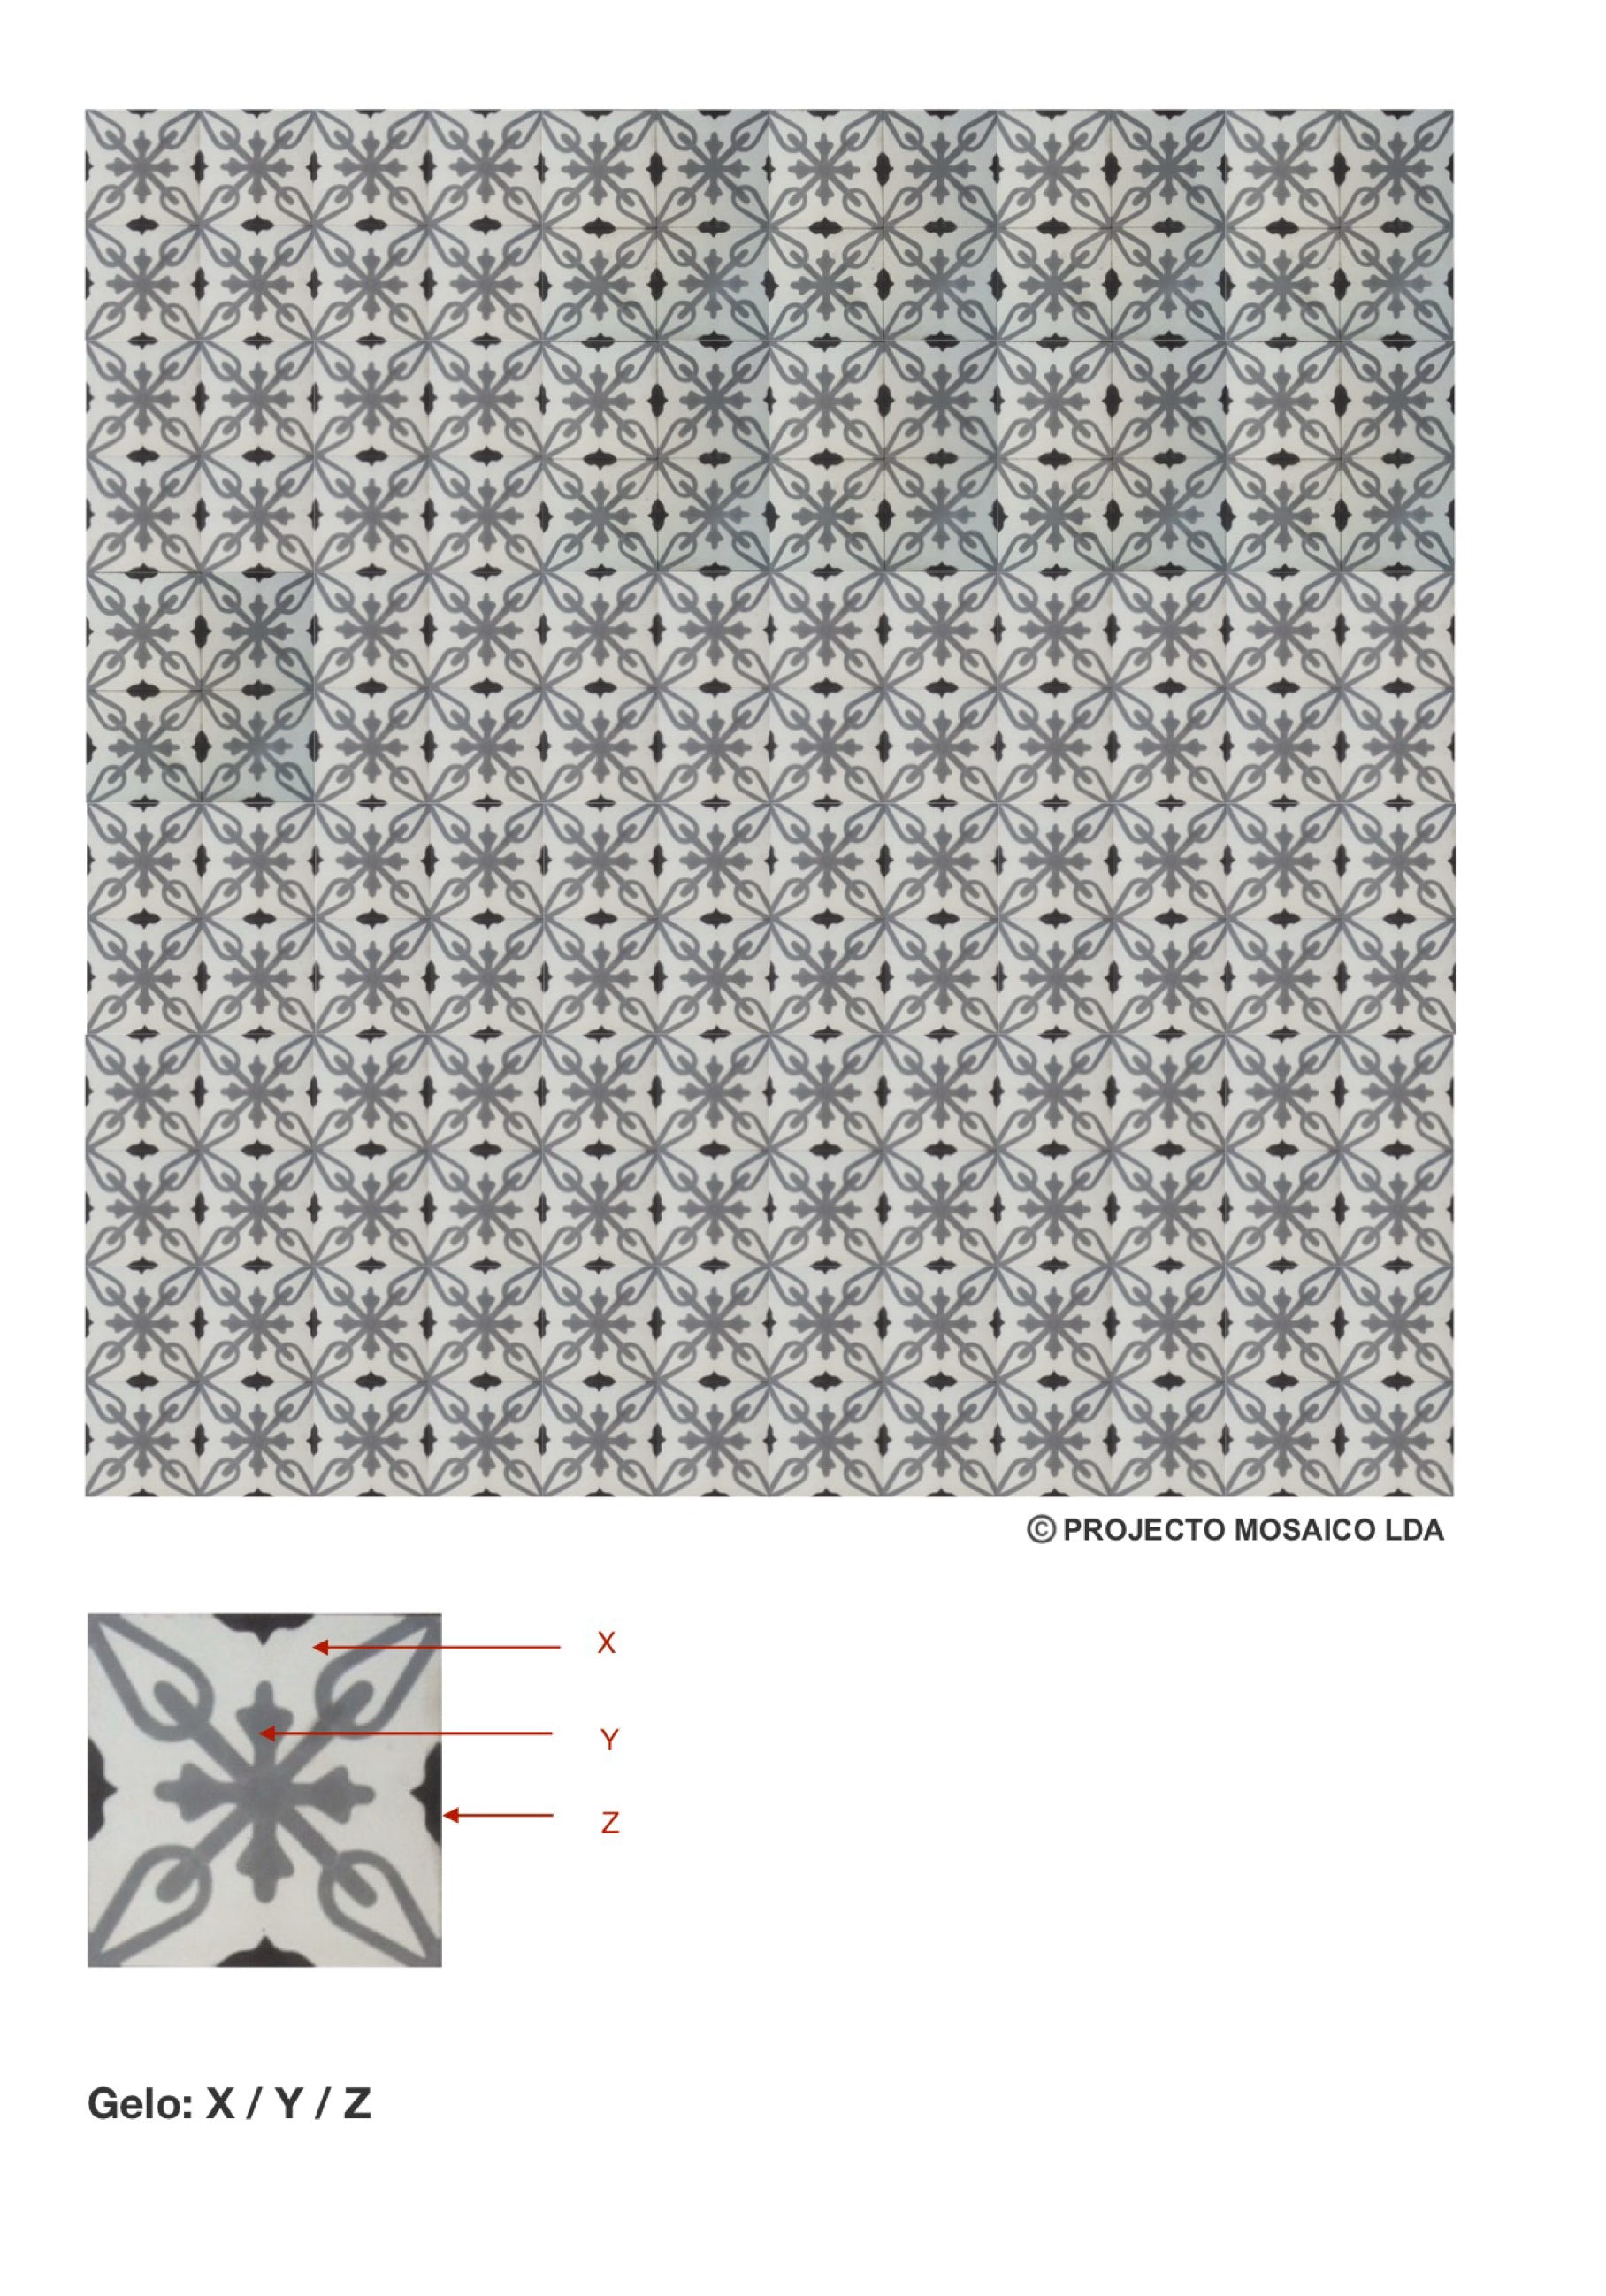 illustração de aplicação do mosaico hidráulico ref: Gelo